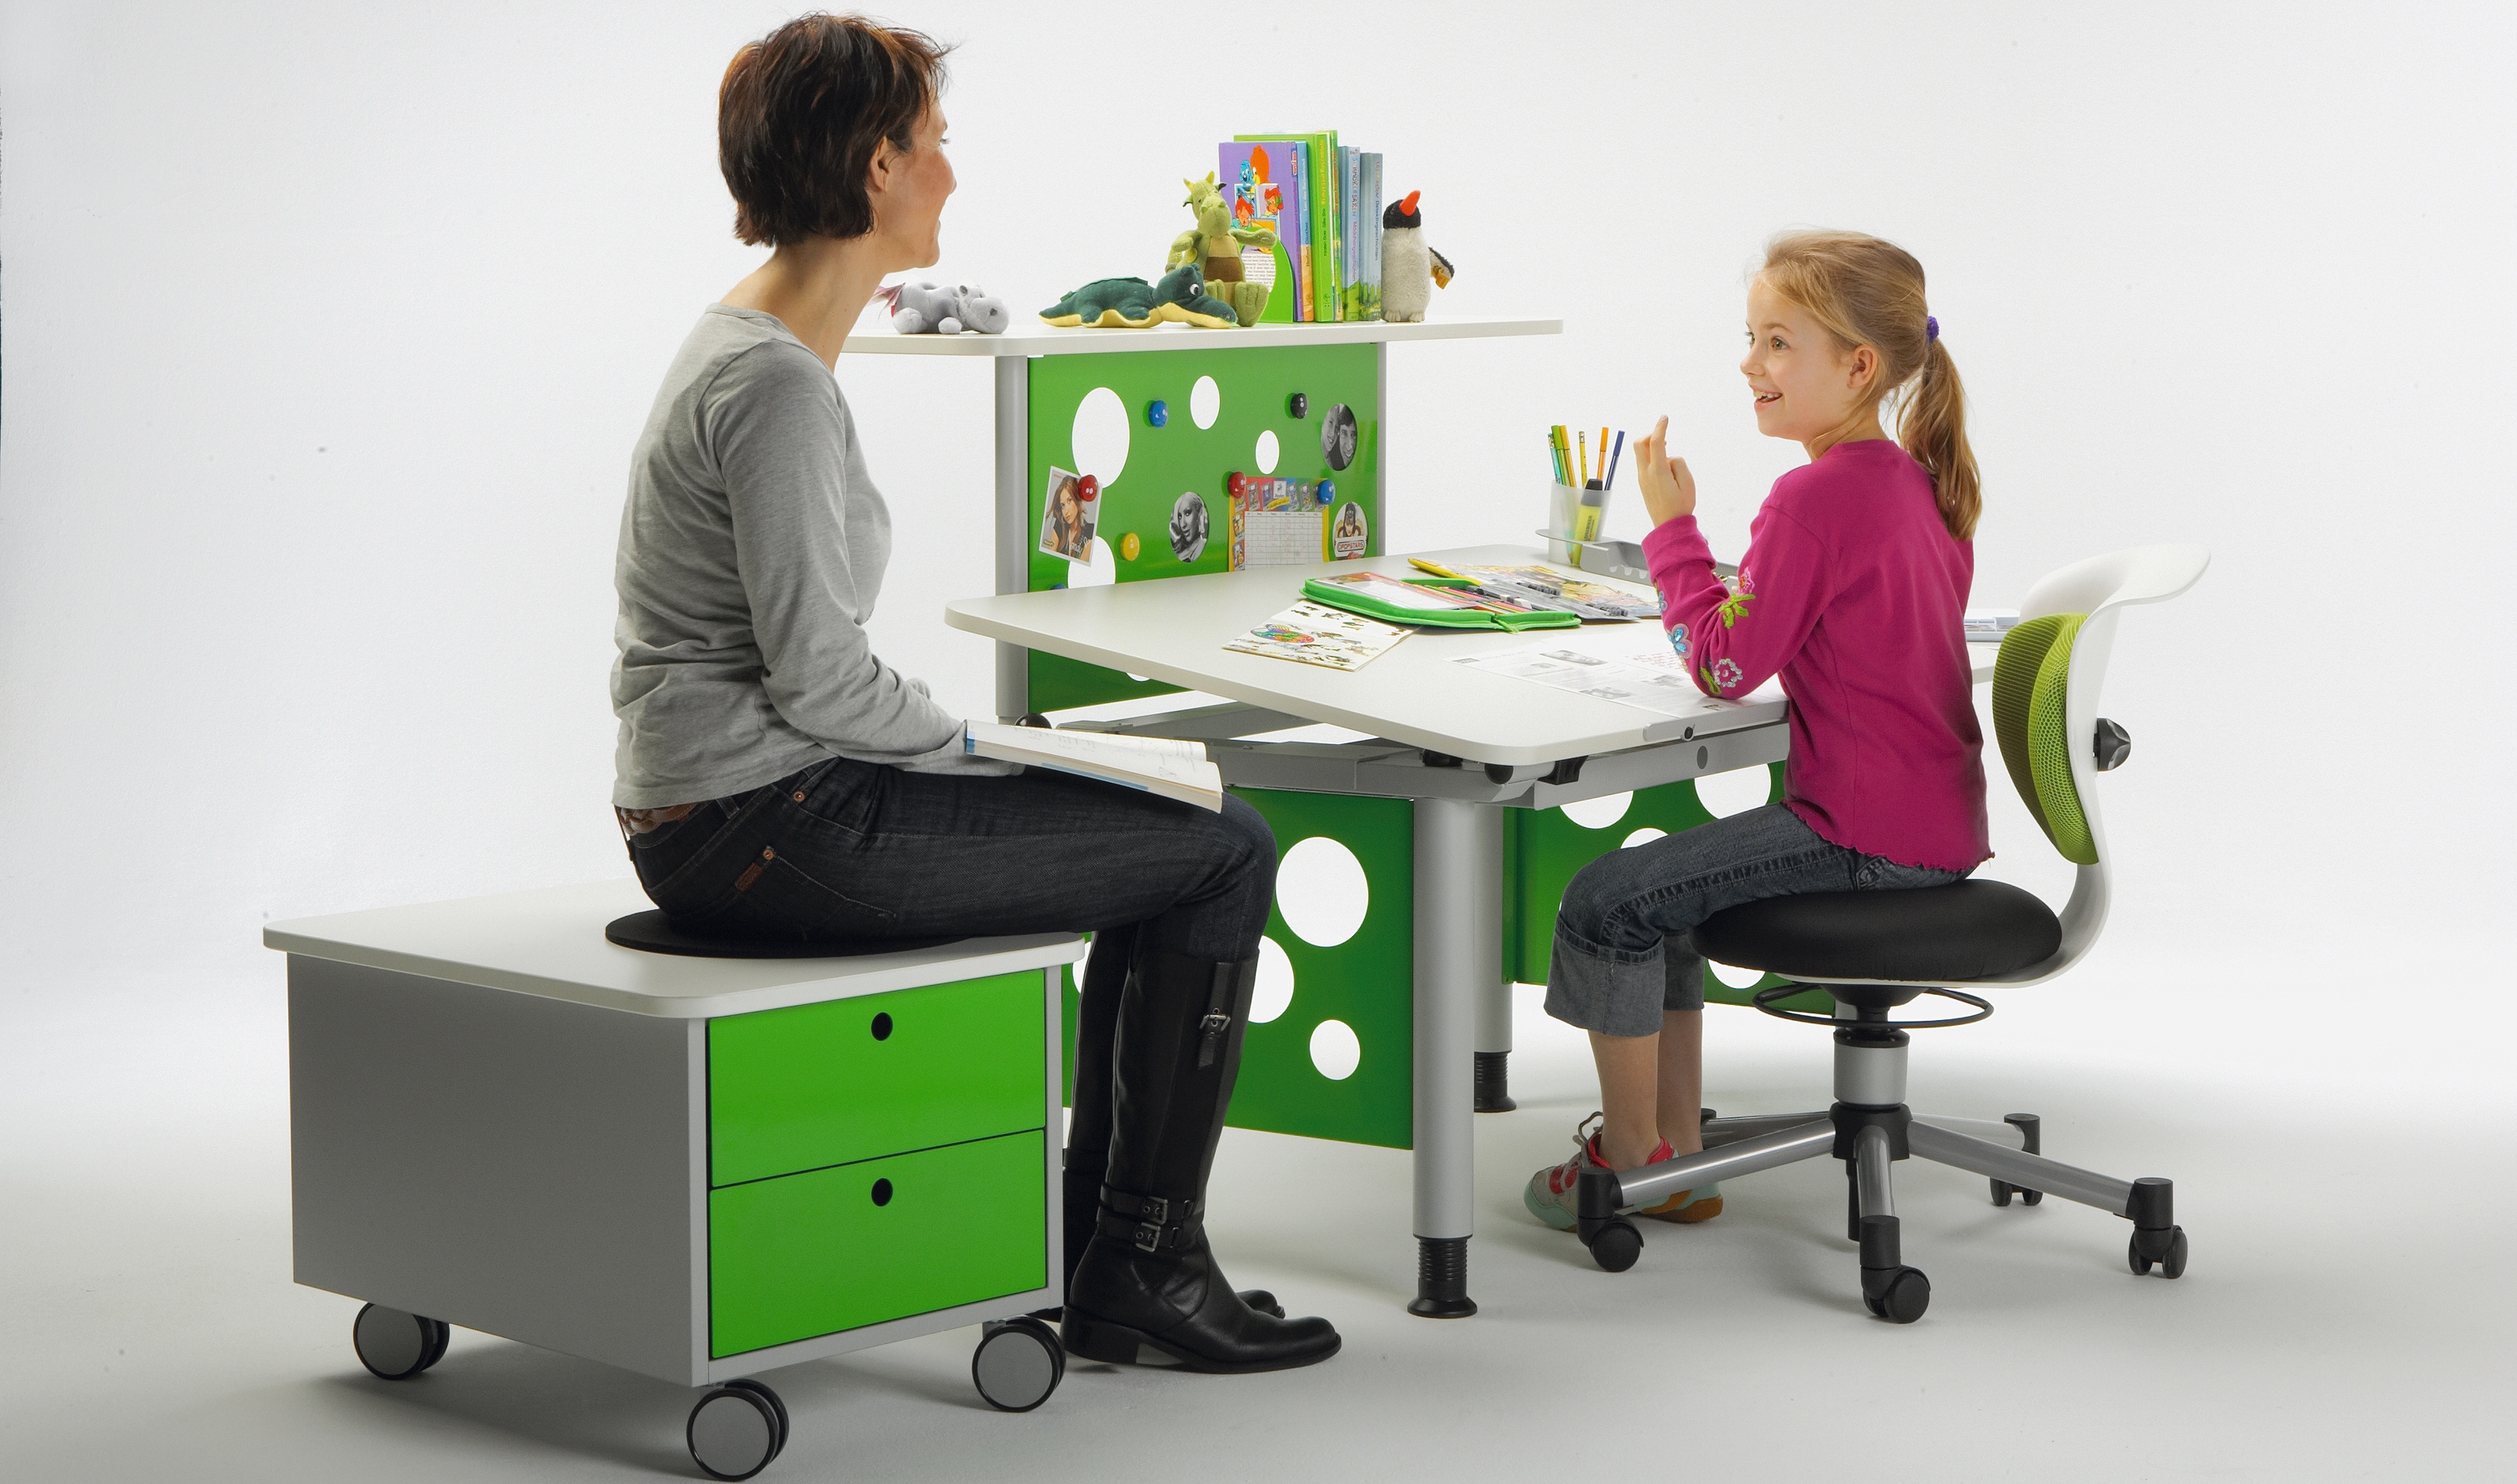 Детские компьютерные кресла: модели для ребенка школьника от 7 лет, варианты для занятий дома за компьютером с подставкой для ног, как выбрать